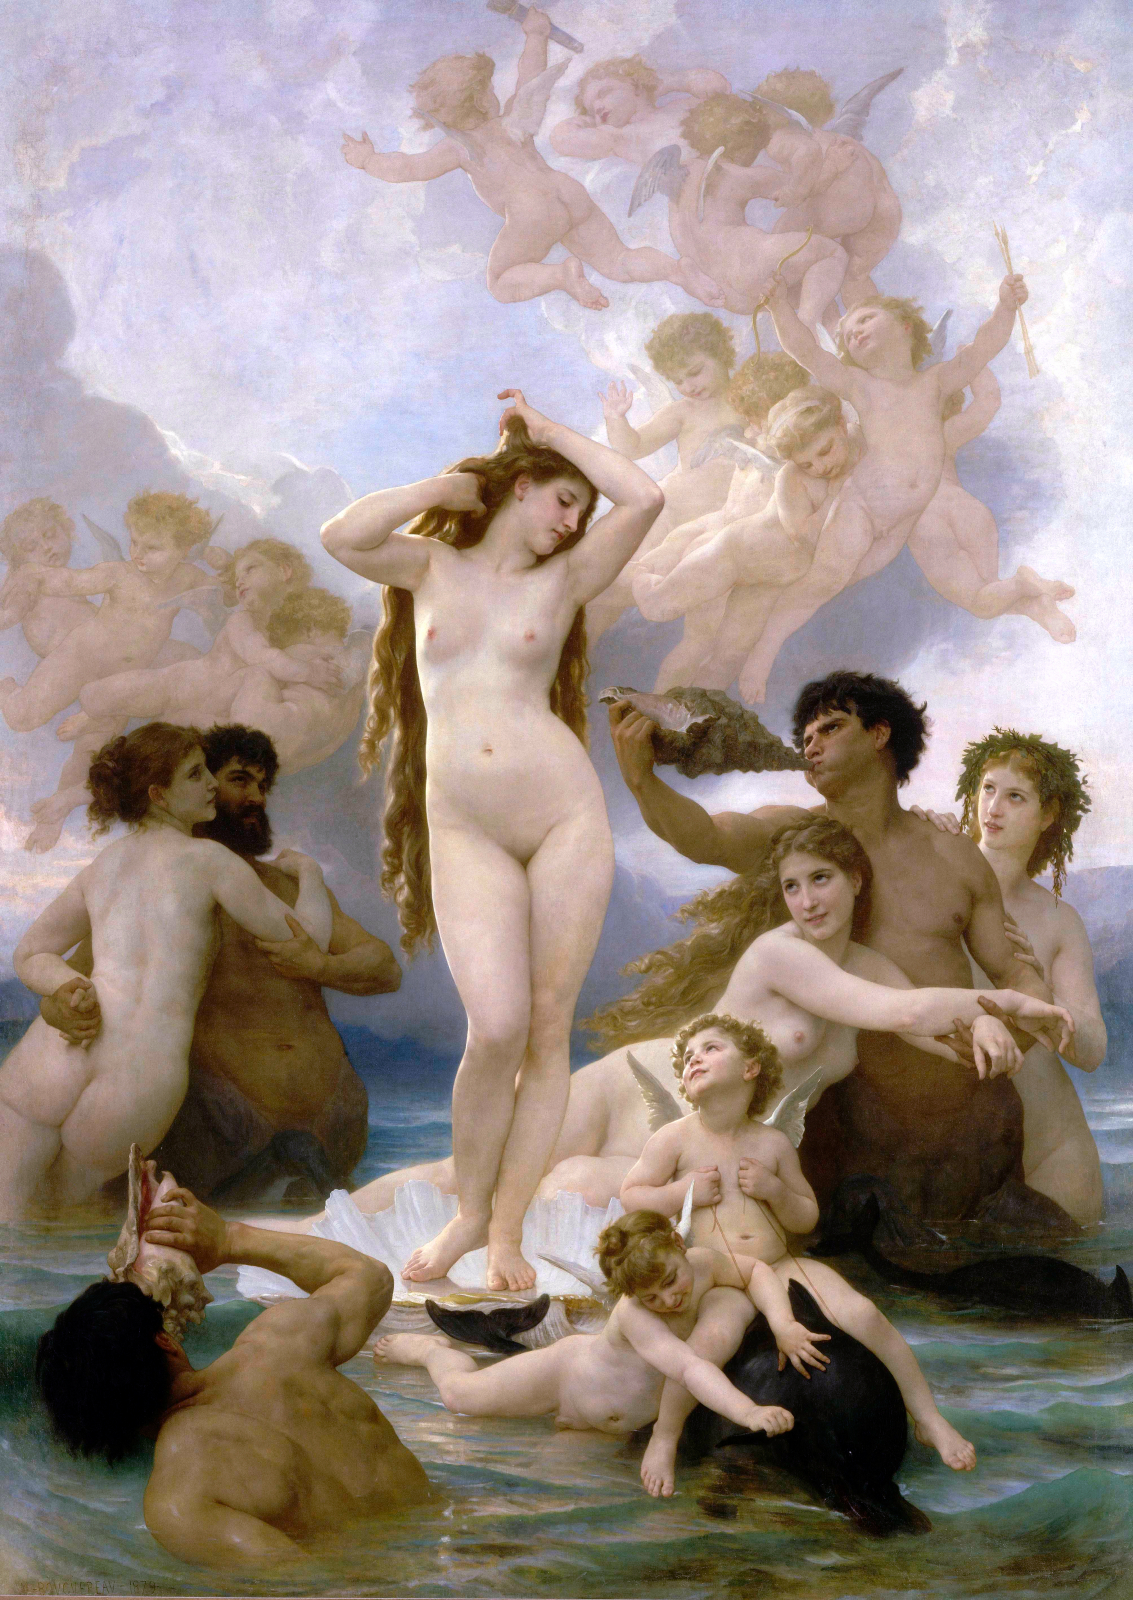 "Birth of Venus" by William Bouguereau